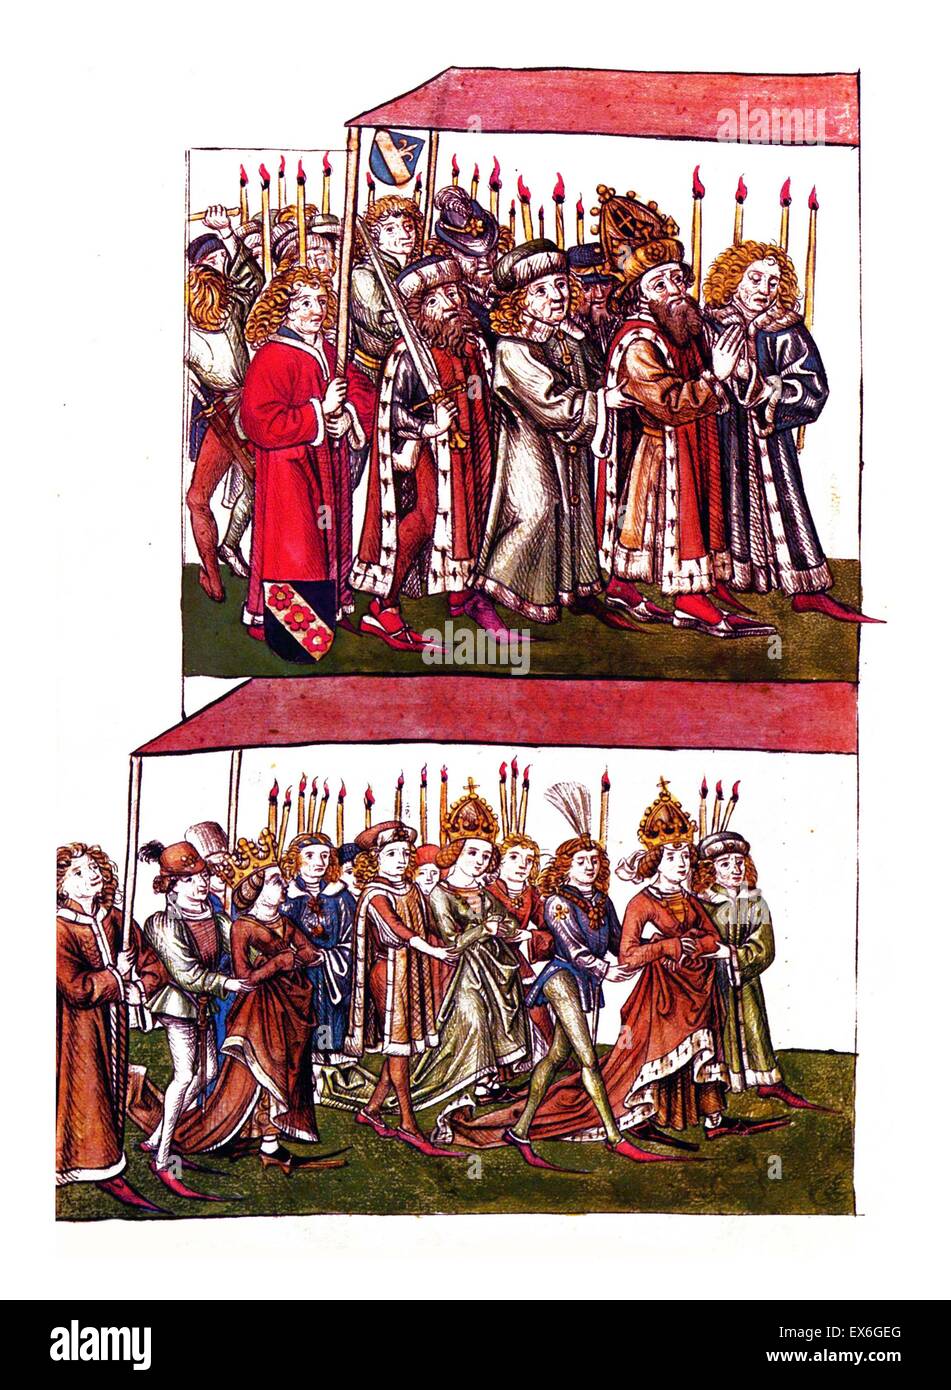 Sigismond et Barbara de Celje au concile de Constance. Sigismond de Luxembourg (14 février 1368 - 9 décembre 1437) Le Saint Empereur Romain de 1433 jusqu'à 1437. Le Concile de Constance est le 15ème siècle concile œcuménique reconnu par l'Église Cathol Banque D'Images